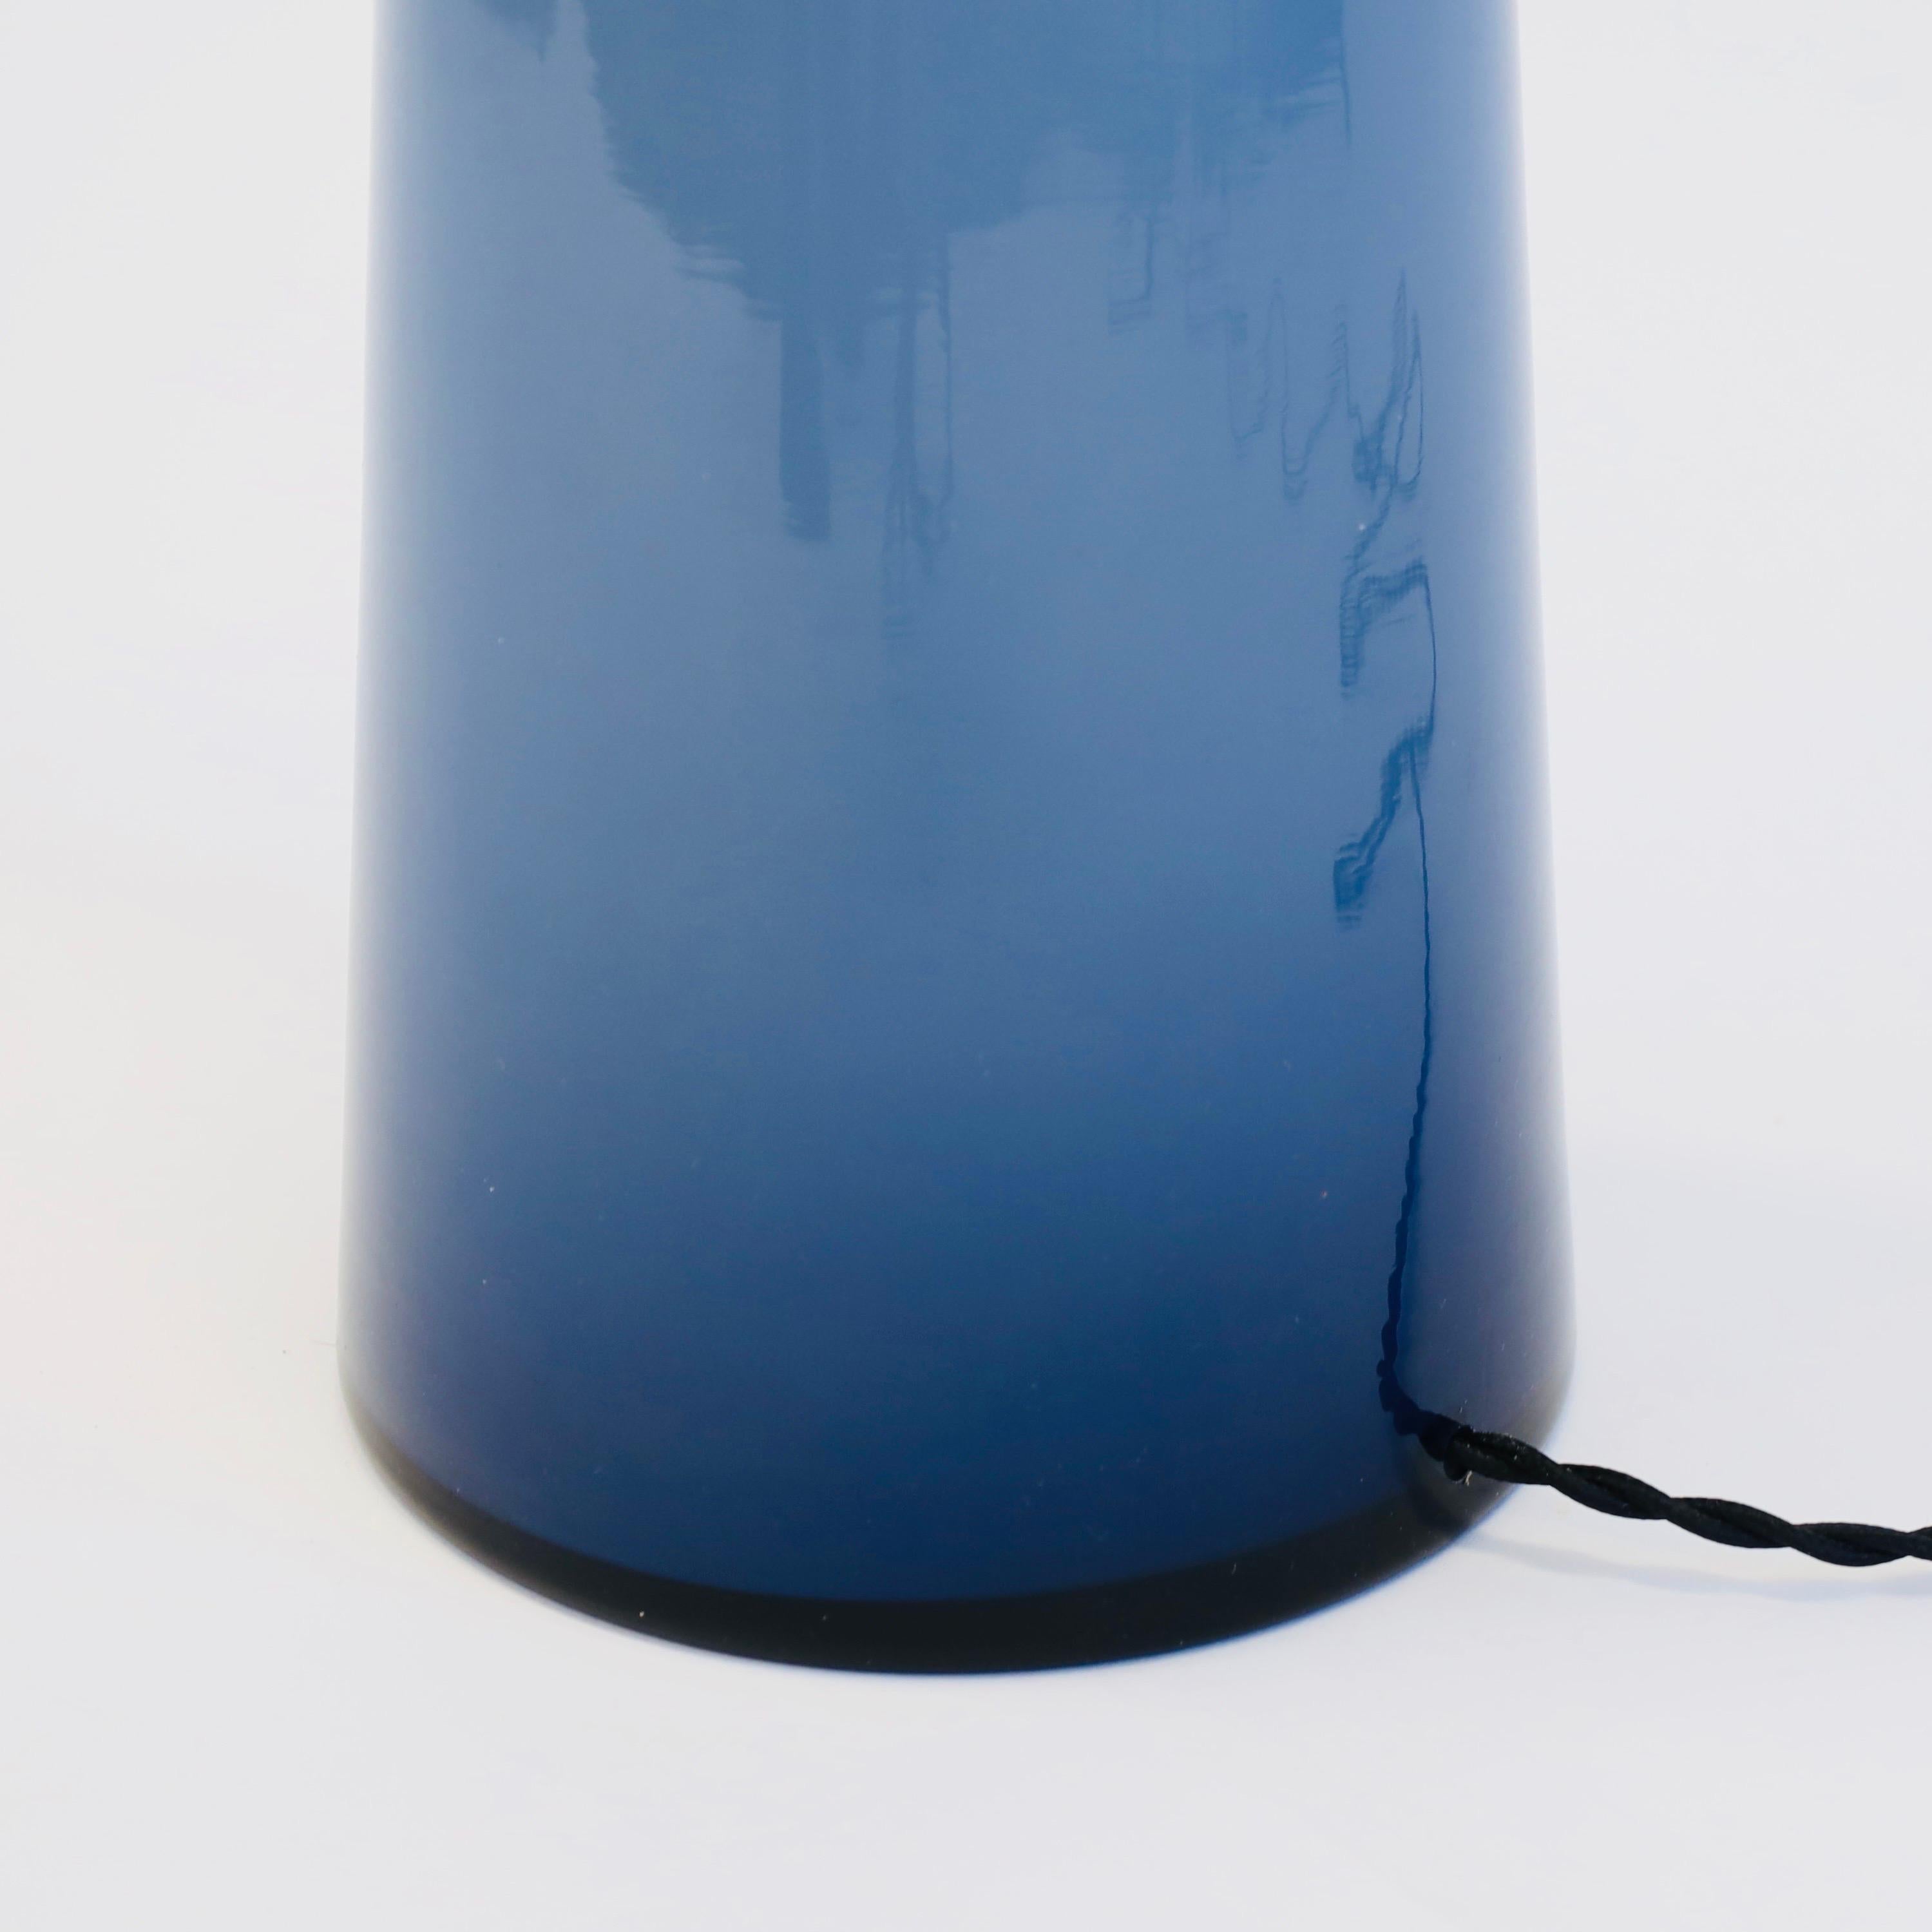 A Danish Modern Table Lamp in blue glass by Kastrup Glasvaerk, 1950s, Denmark For Sale 4